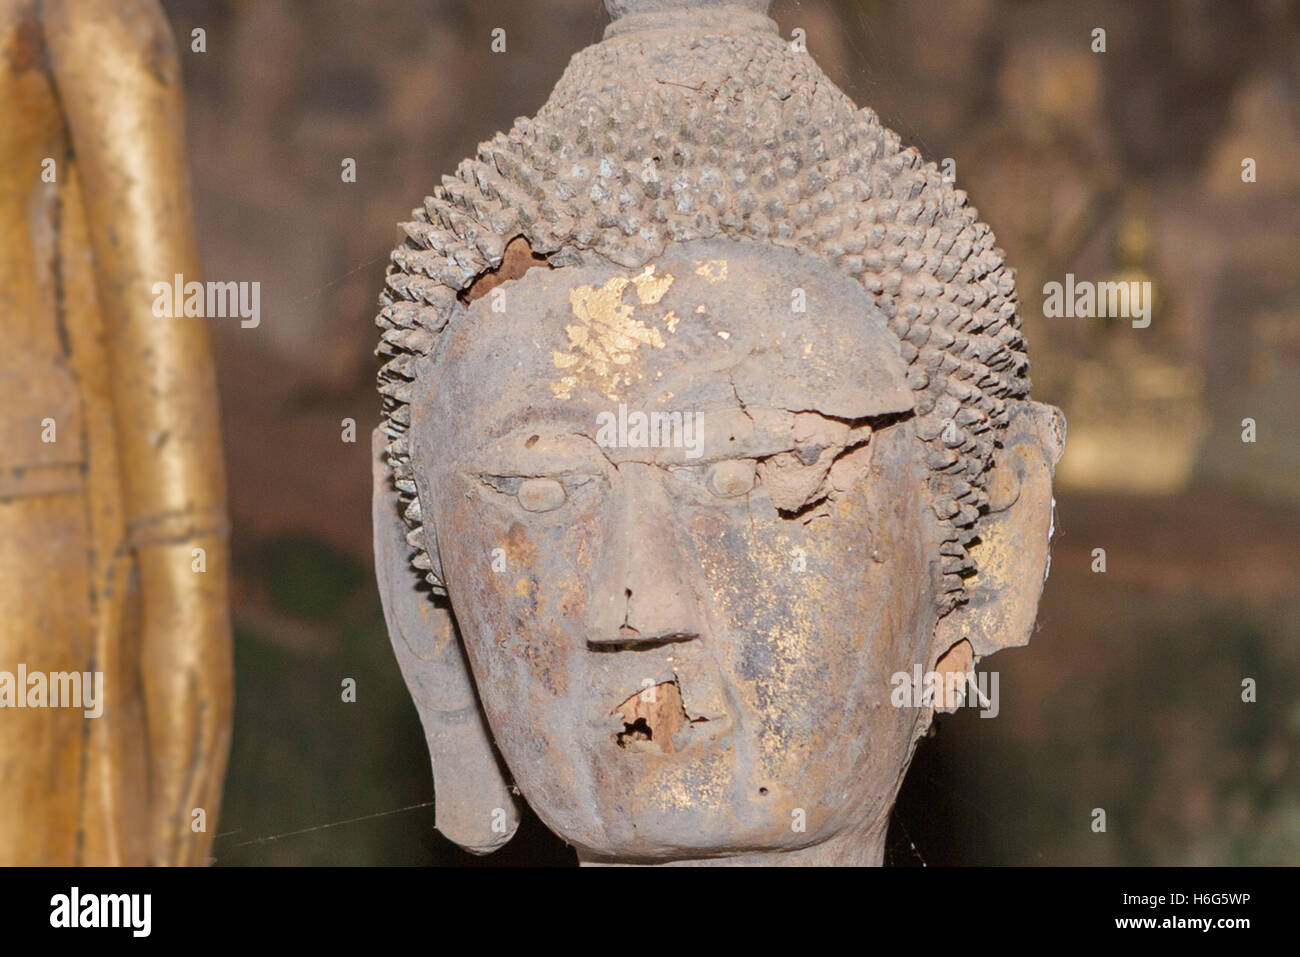 Sculture di Buddha in miniatura, Tham Ting, grotta inferiore, grotte di Pak ou, Laos Foto Stock